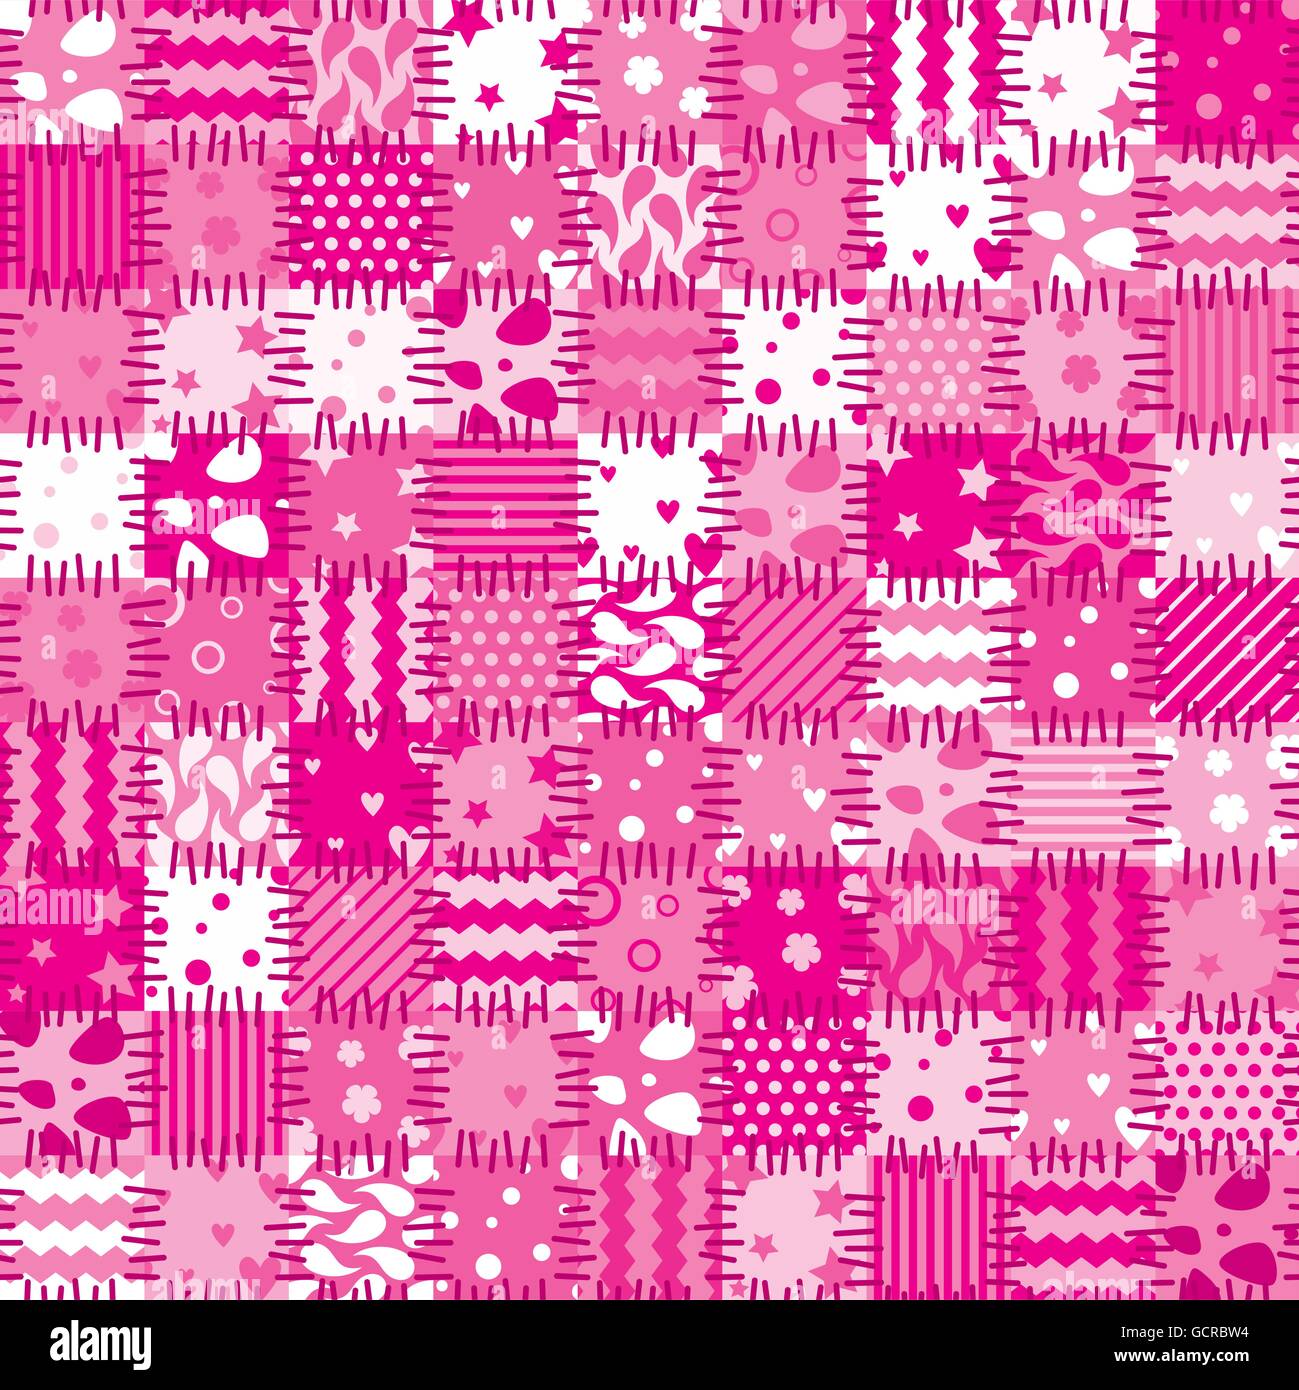 vector pink patchwork art background Stock Vector